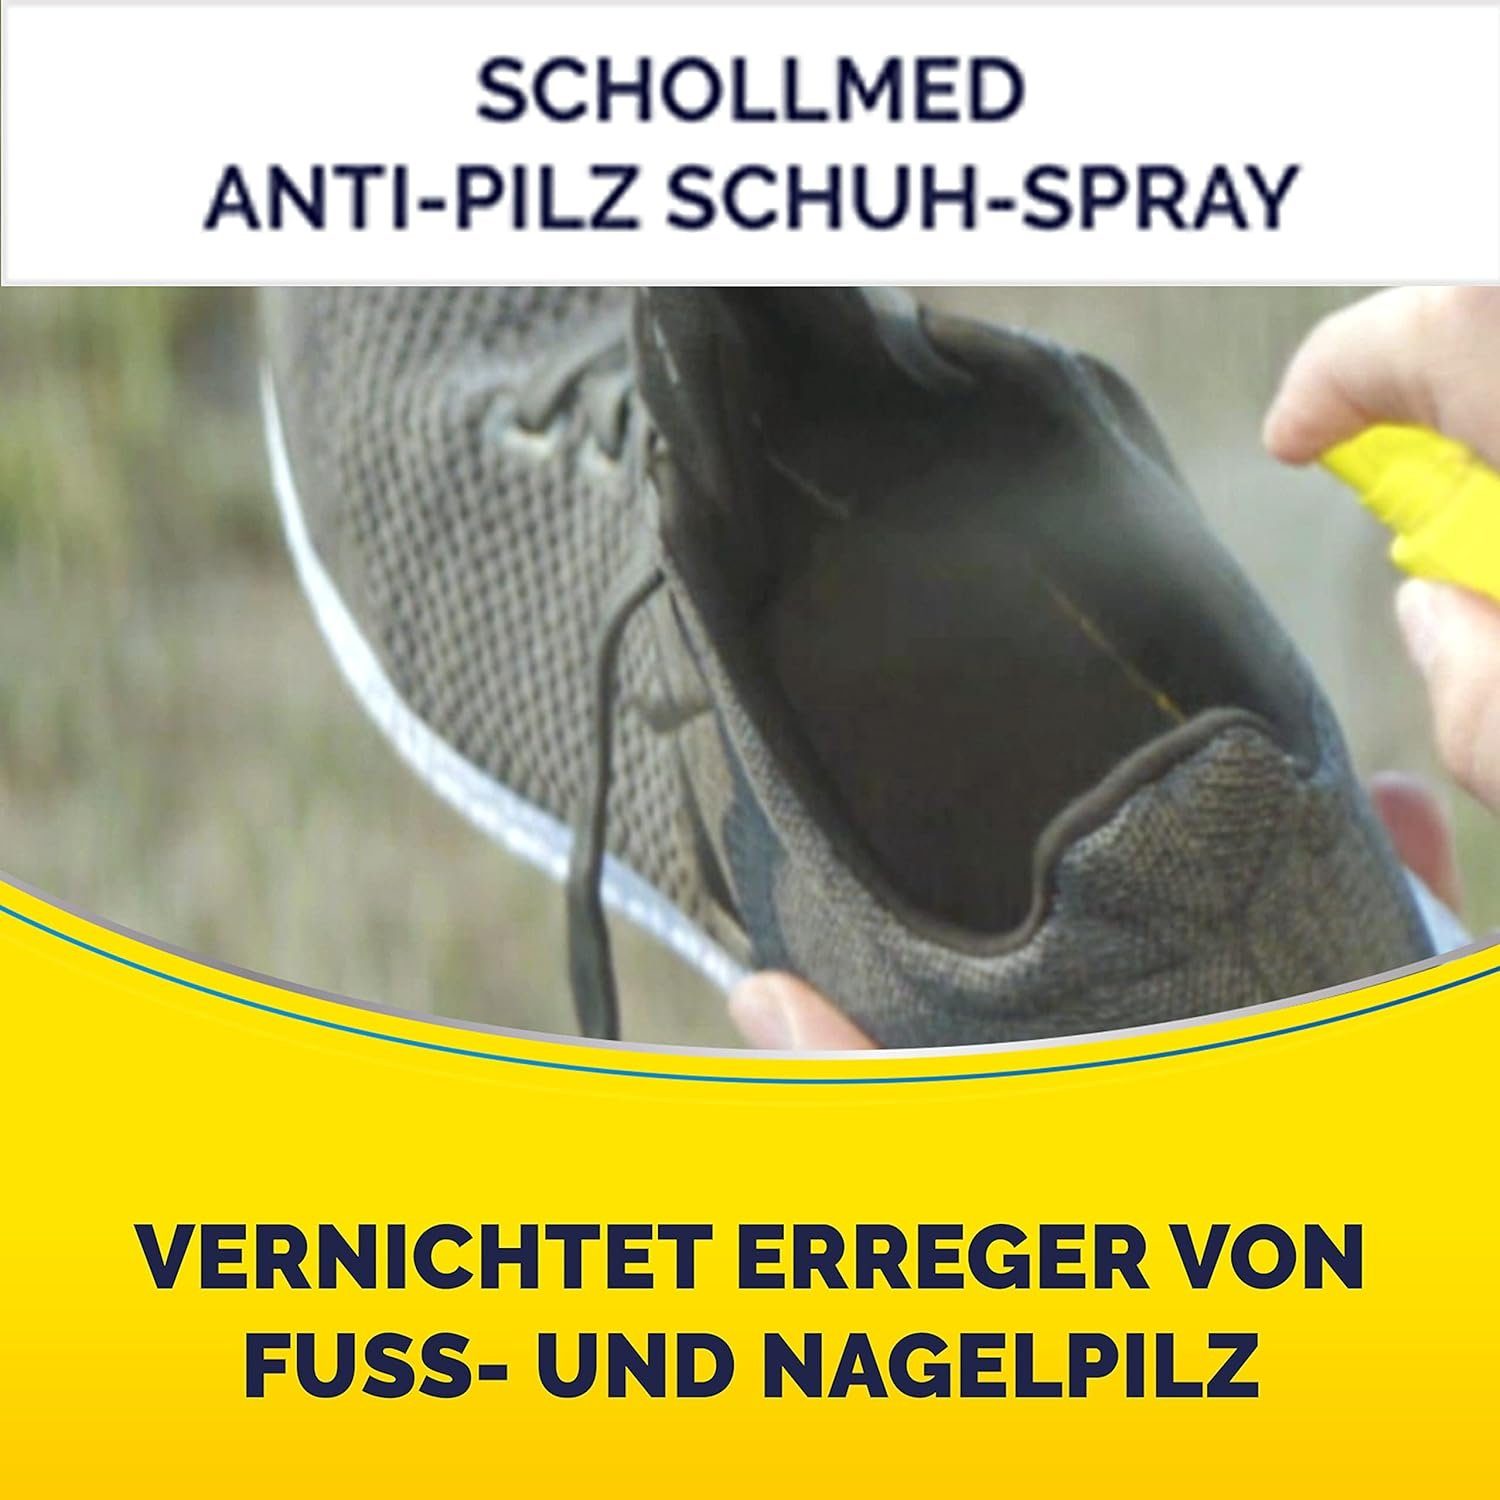 Scholl Fußpflegespray 2x 250ml Pflege Erreger 2-tlg., Anti-Pilz mit Langzeitwirkung dermatologisch getestet, Vernichtet Schuh-Spray Fußpflege Schuhdesinfektionsspray Schutz